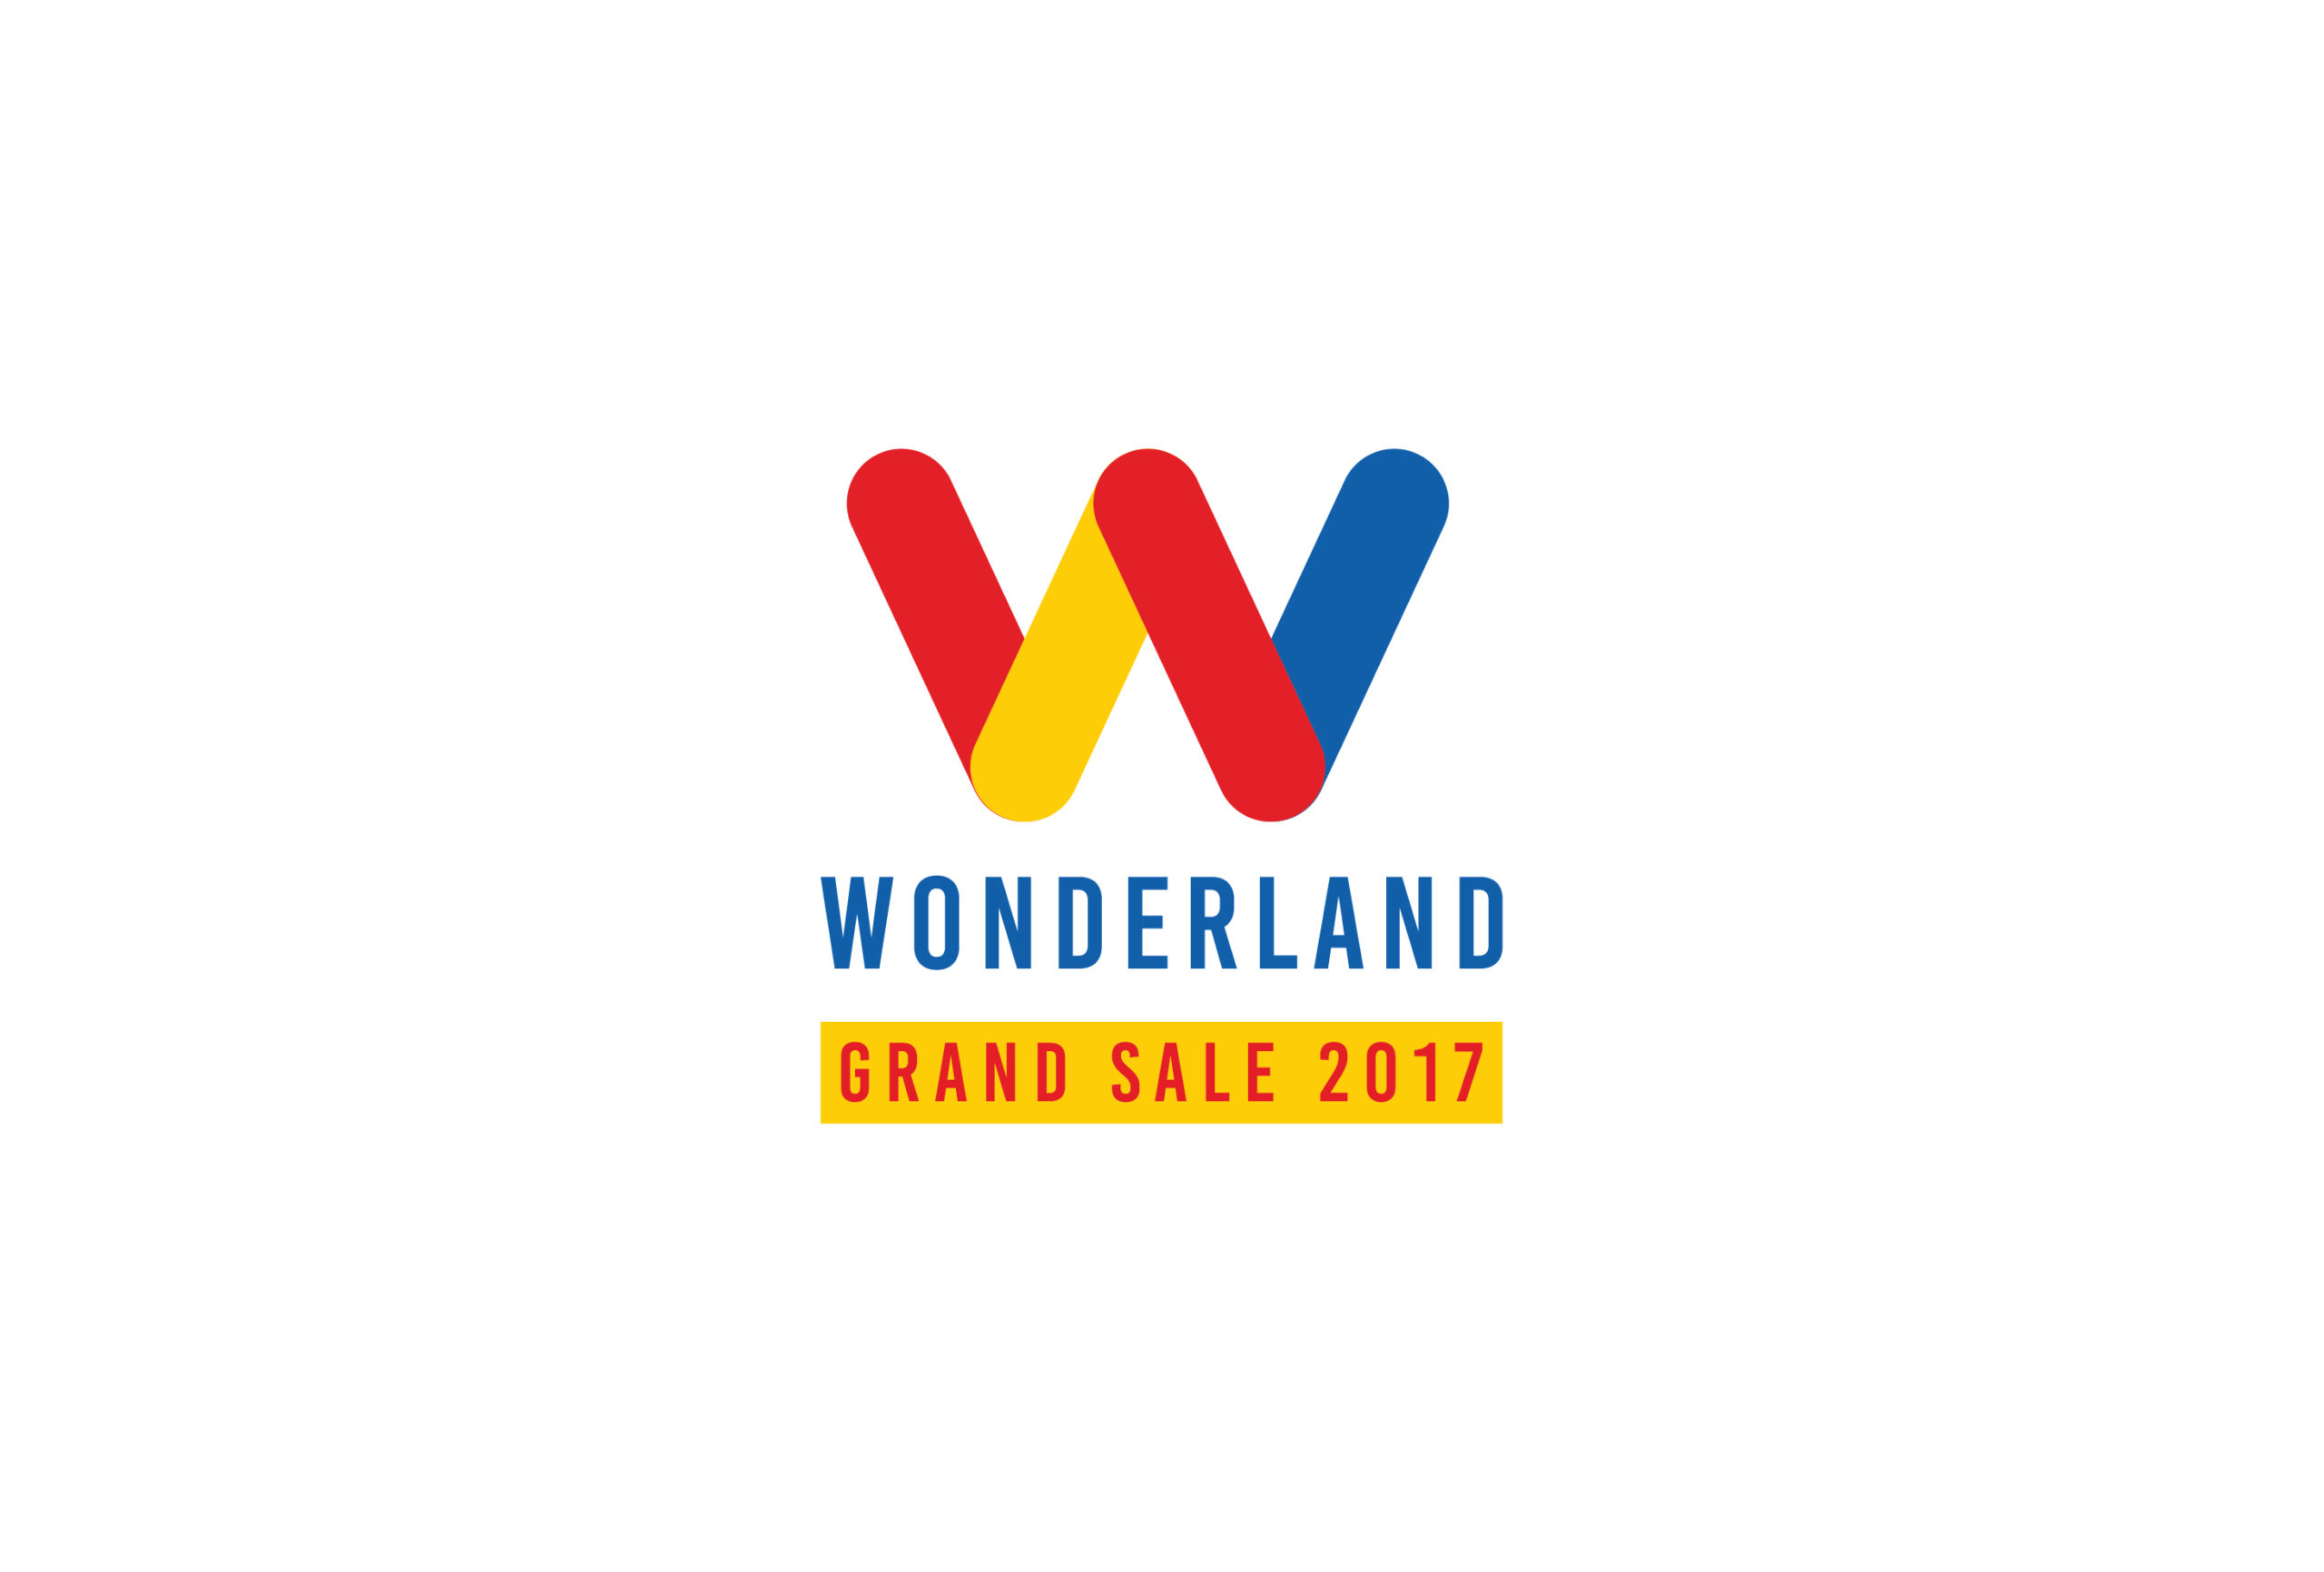 Wonderland Grand Sale 2017 _for web-01